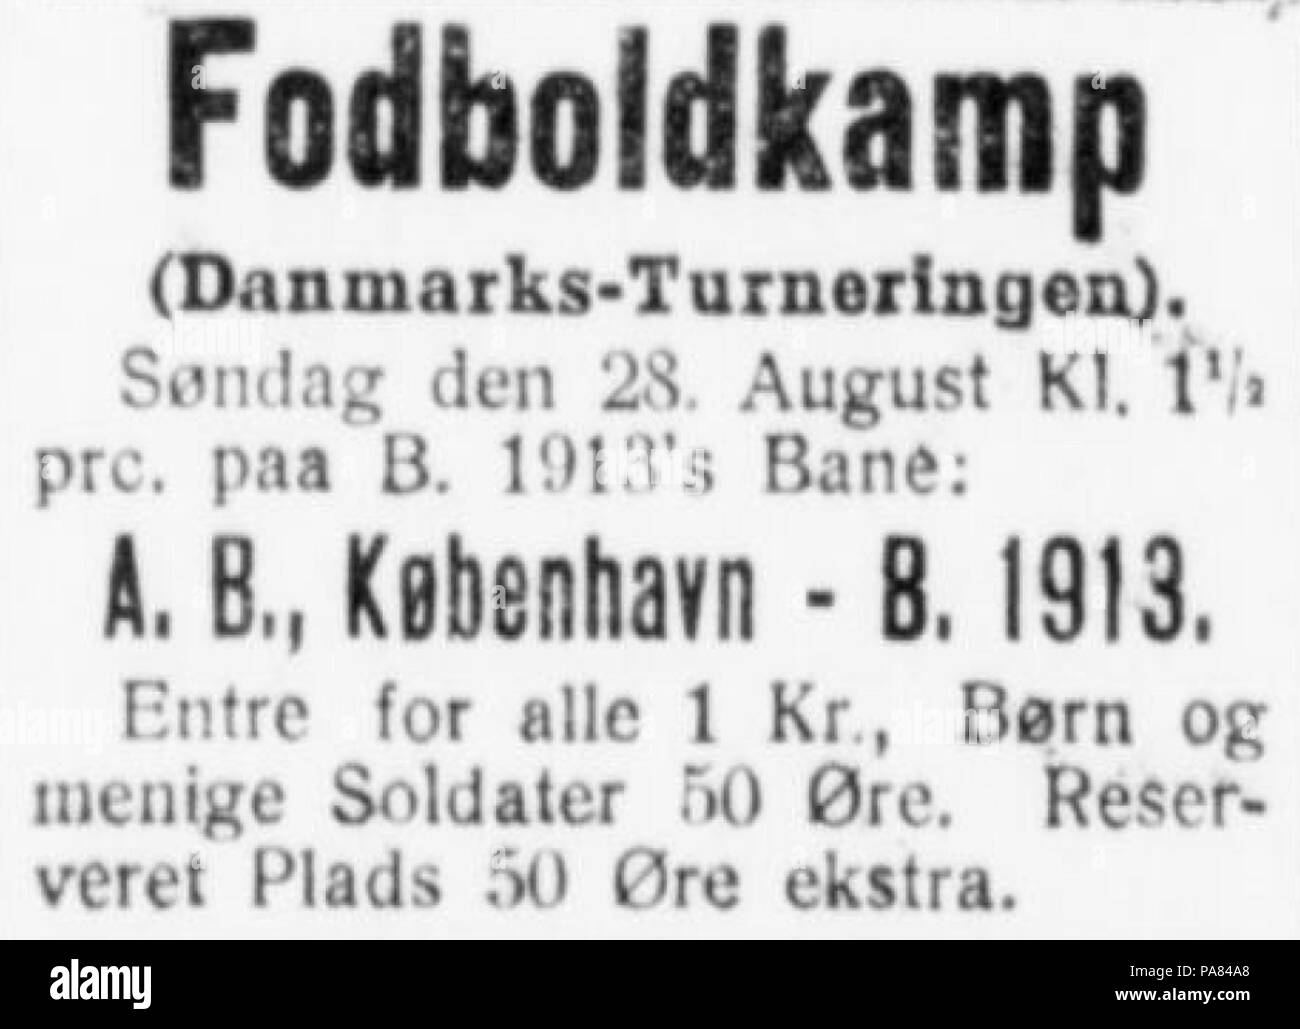 59 Danmarksmesterskabsturneringen Venstreblad Fyns publicité match de football 27.08.1927 Odense Banque D'Images